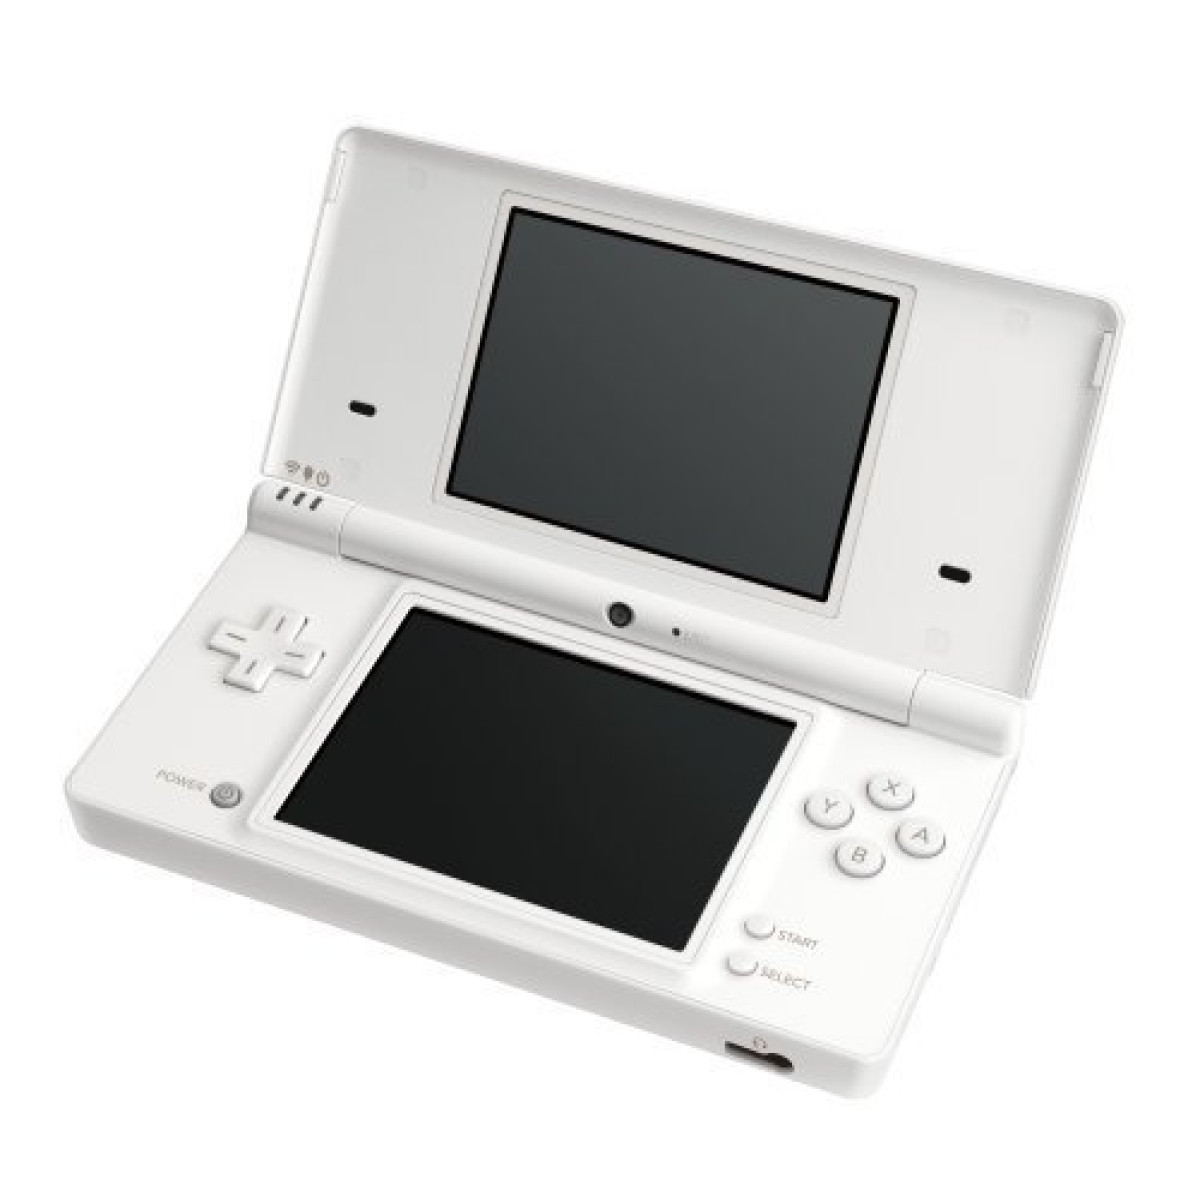 Nintendo DSi fehér doboz nélkül